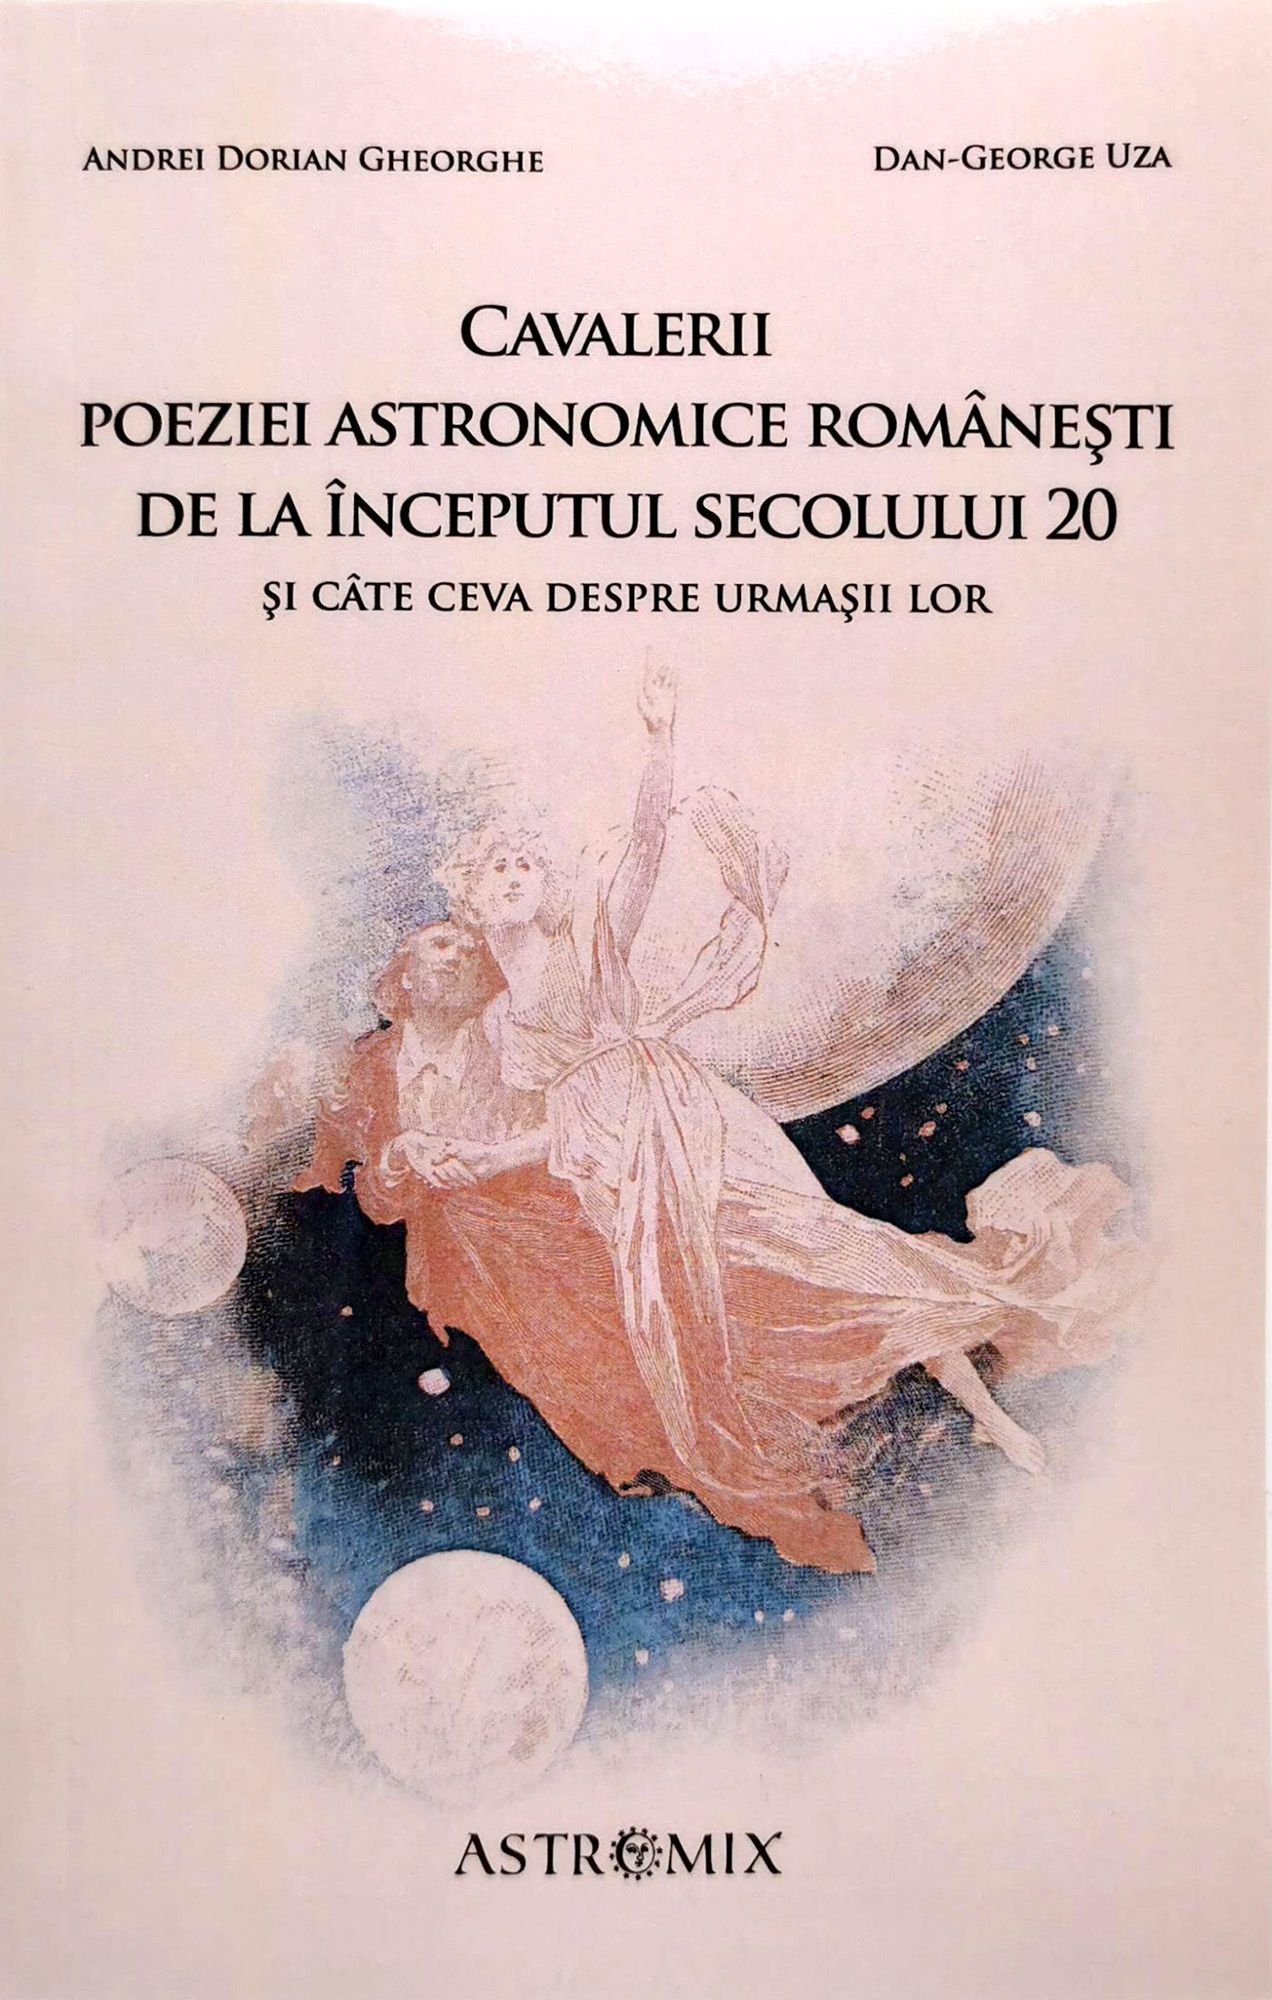 Cavalerii poeziei astronomice romanesti de la inceputul secolului 20